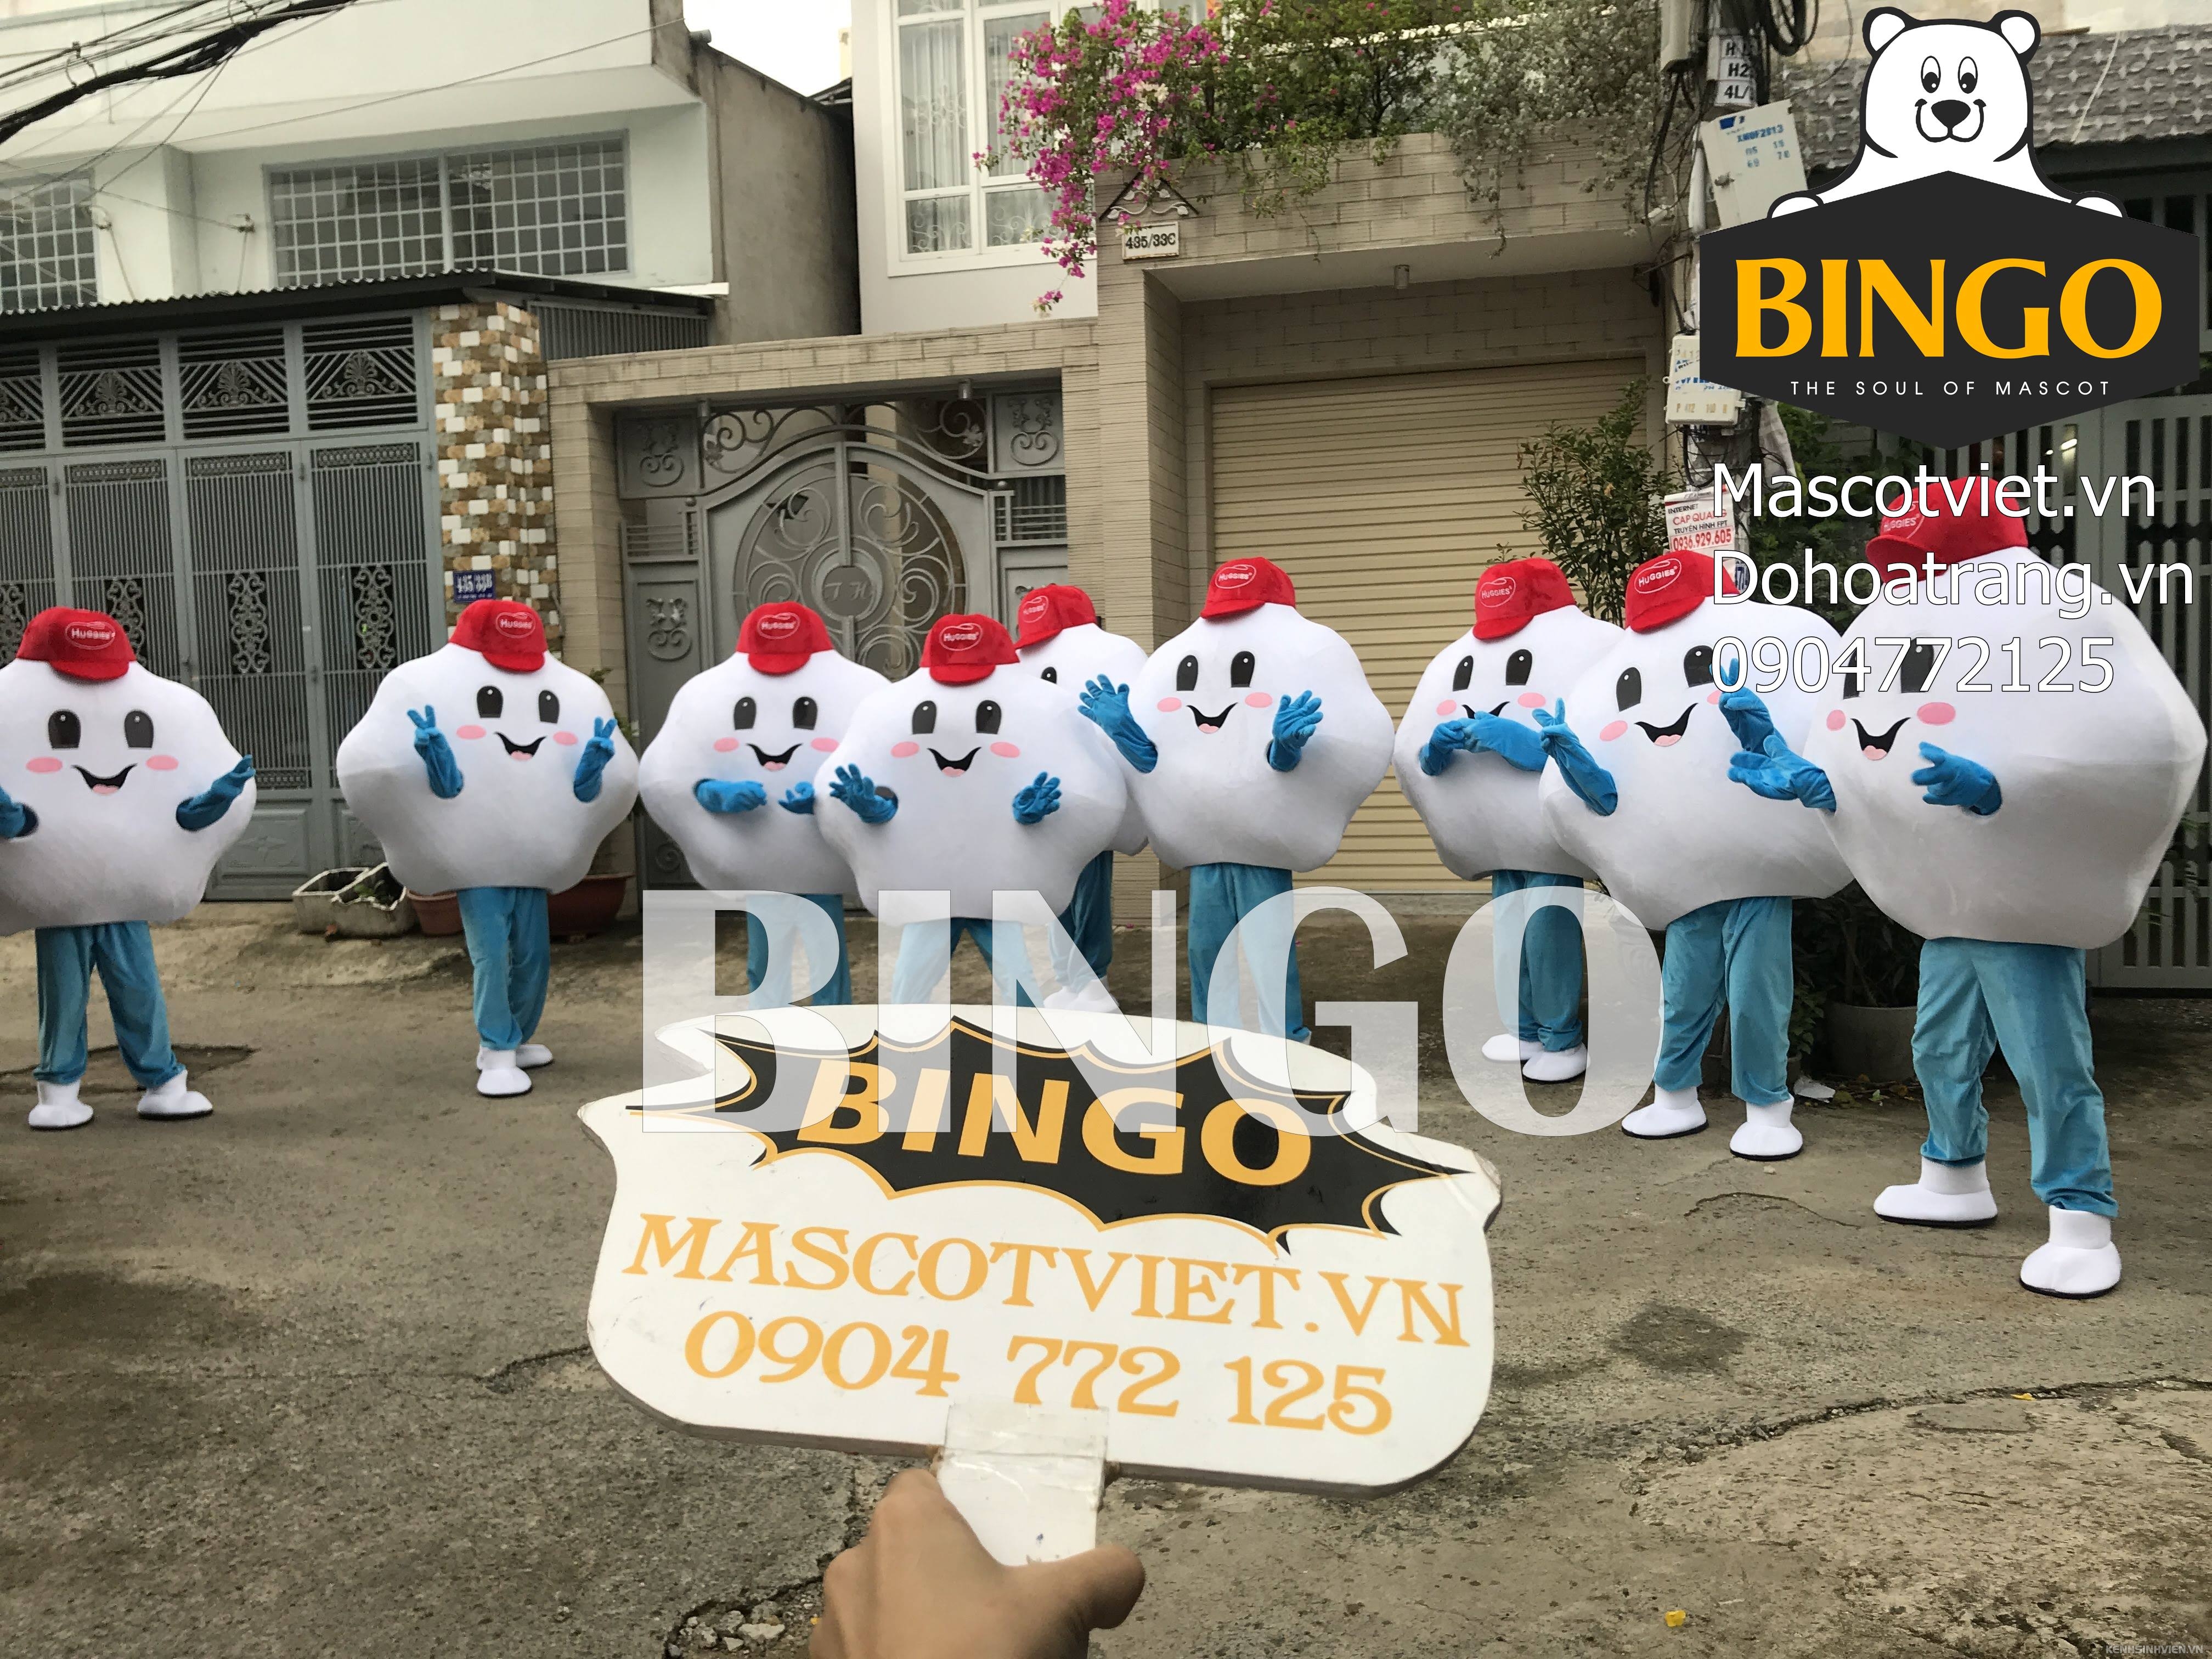 mascot-mo-hinh-dam-may-bingo-costumes-0904772125.jpg